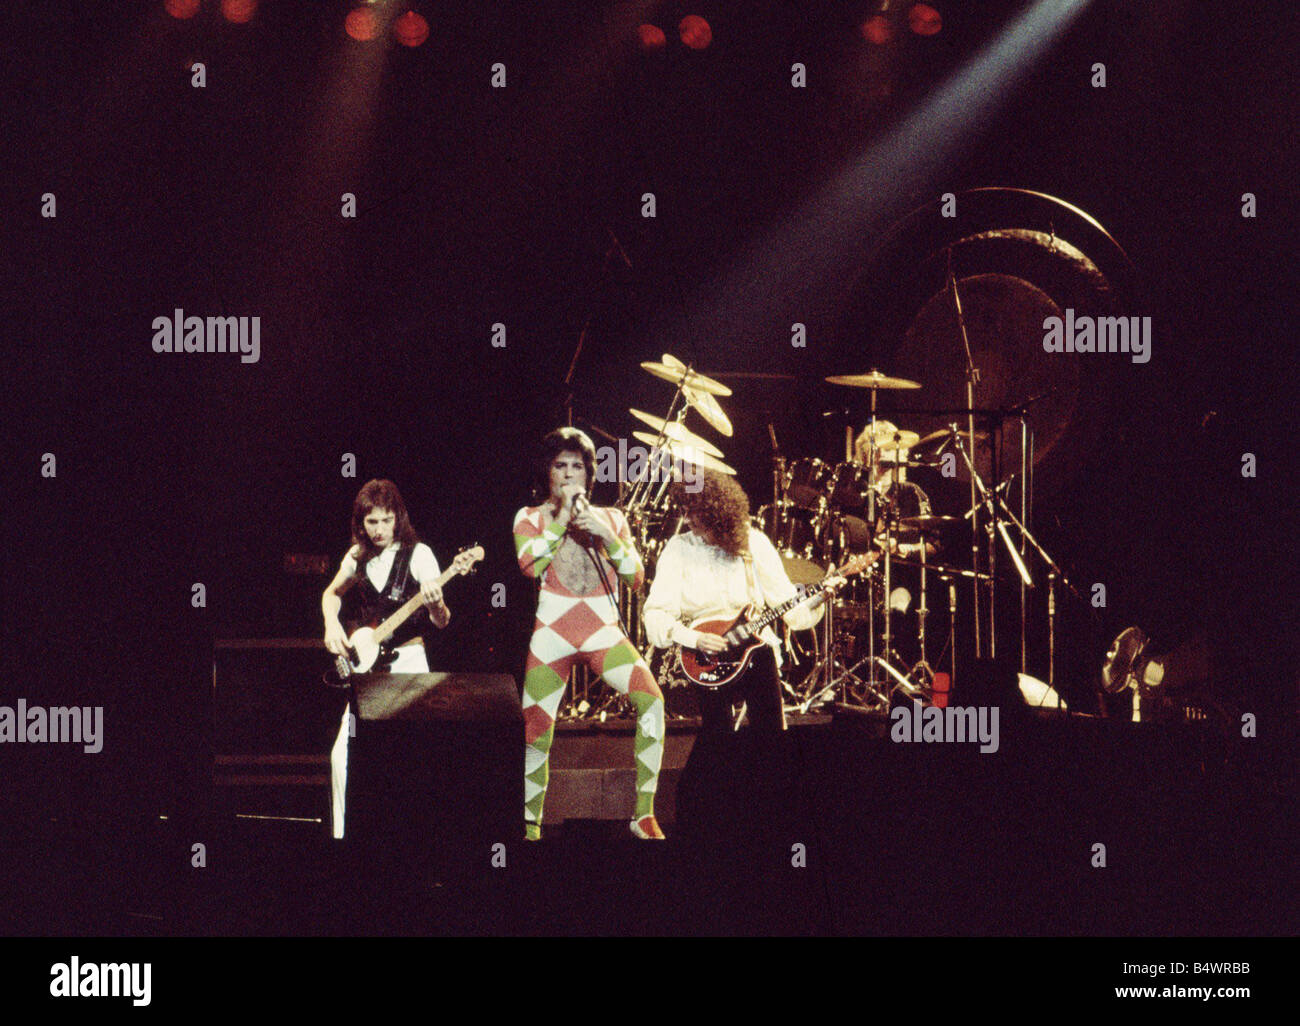 Groupe rock Queen Freddie Mercury Brian May, John Deacon et Roger Taylor Reine du concert 1970 Freddie Mercury Banque D'Images